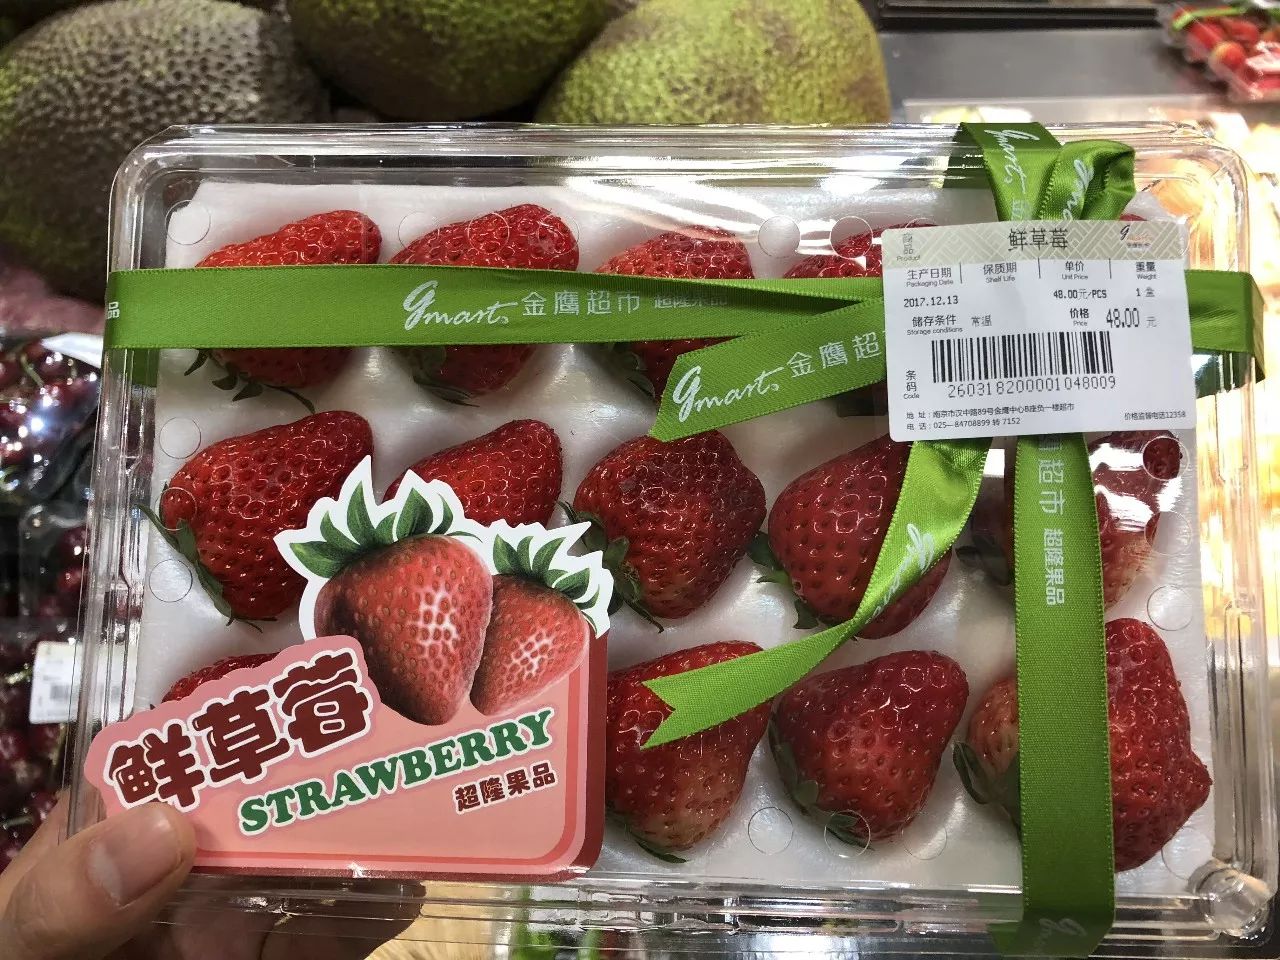 而高大上的金鹰超市里的草莓是以盒装售卖的, 每盒装有15个草莓